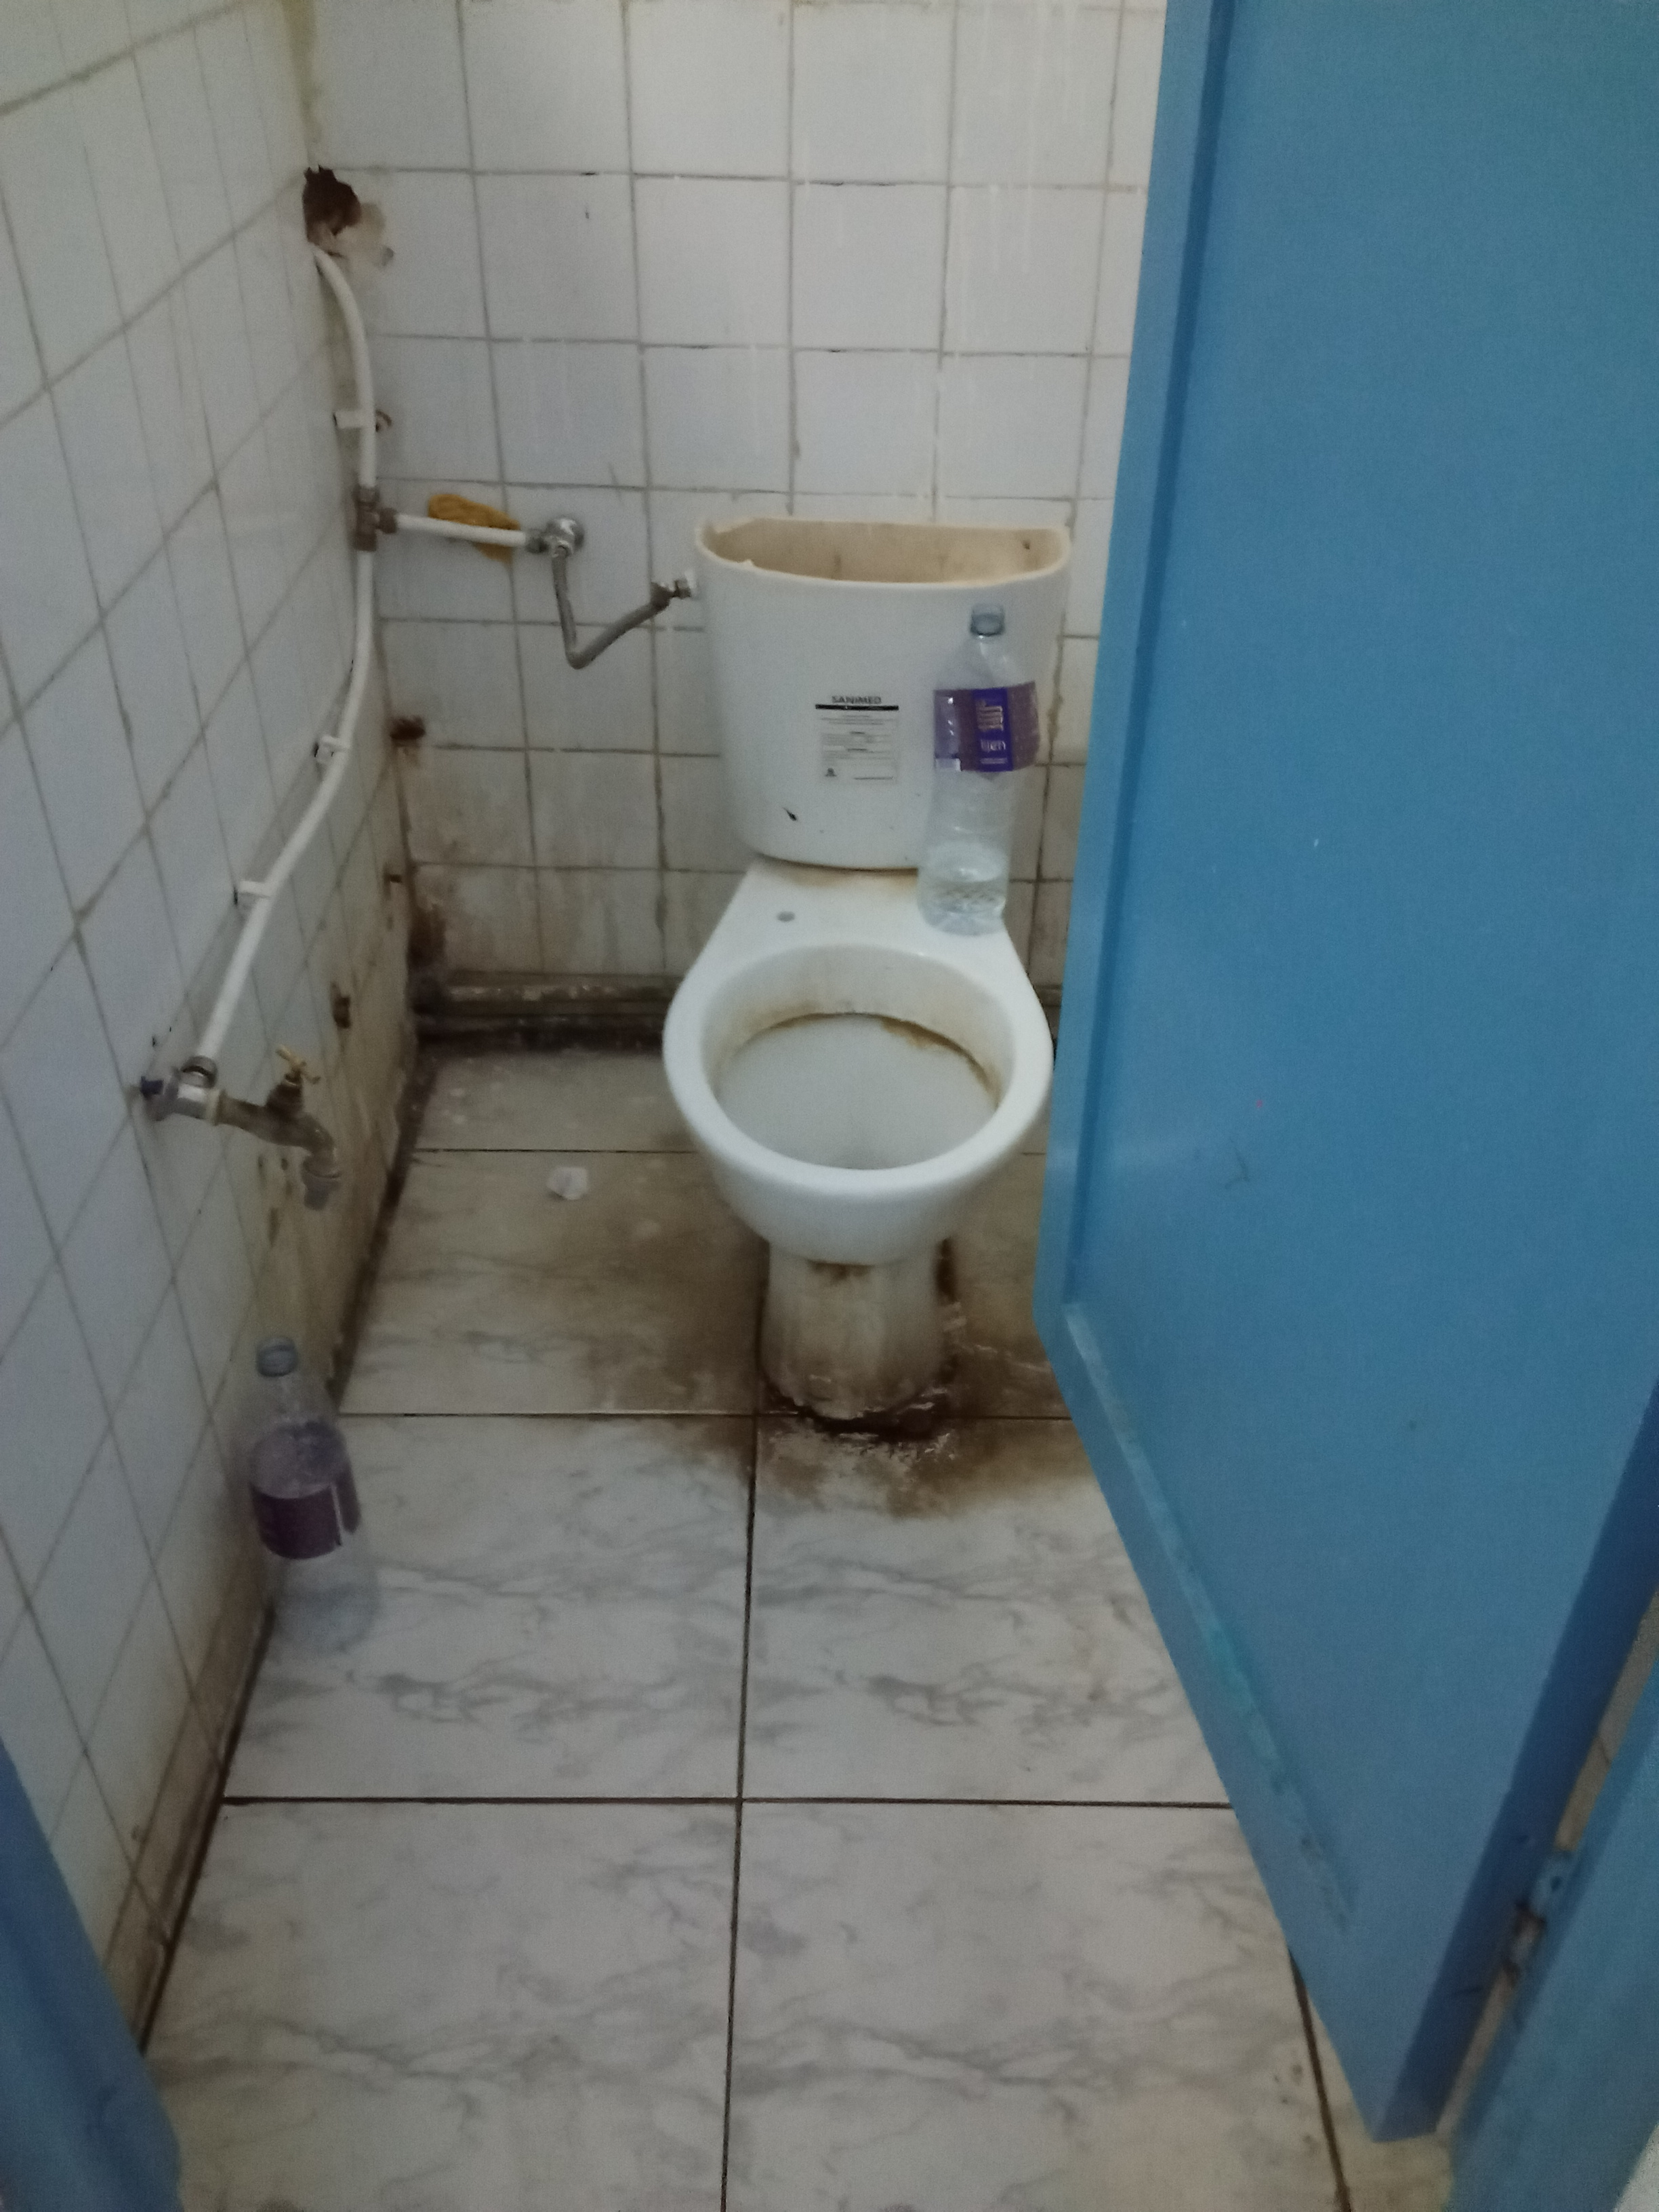 Les sanitaires du centre d’El Ouardia (photo prise par les détenus en mars 2020)